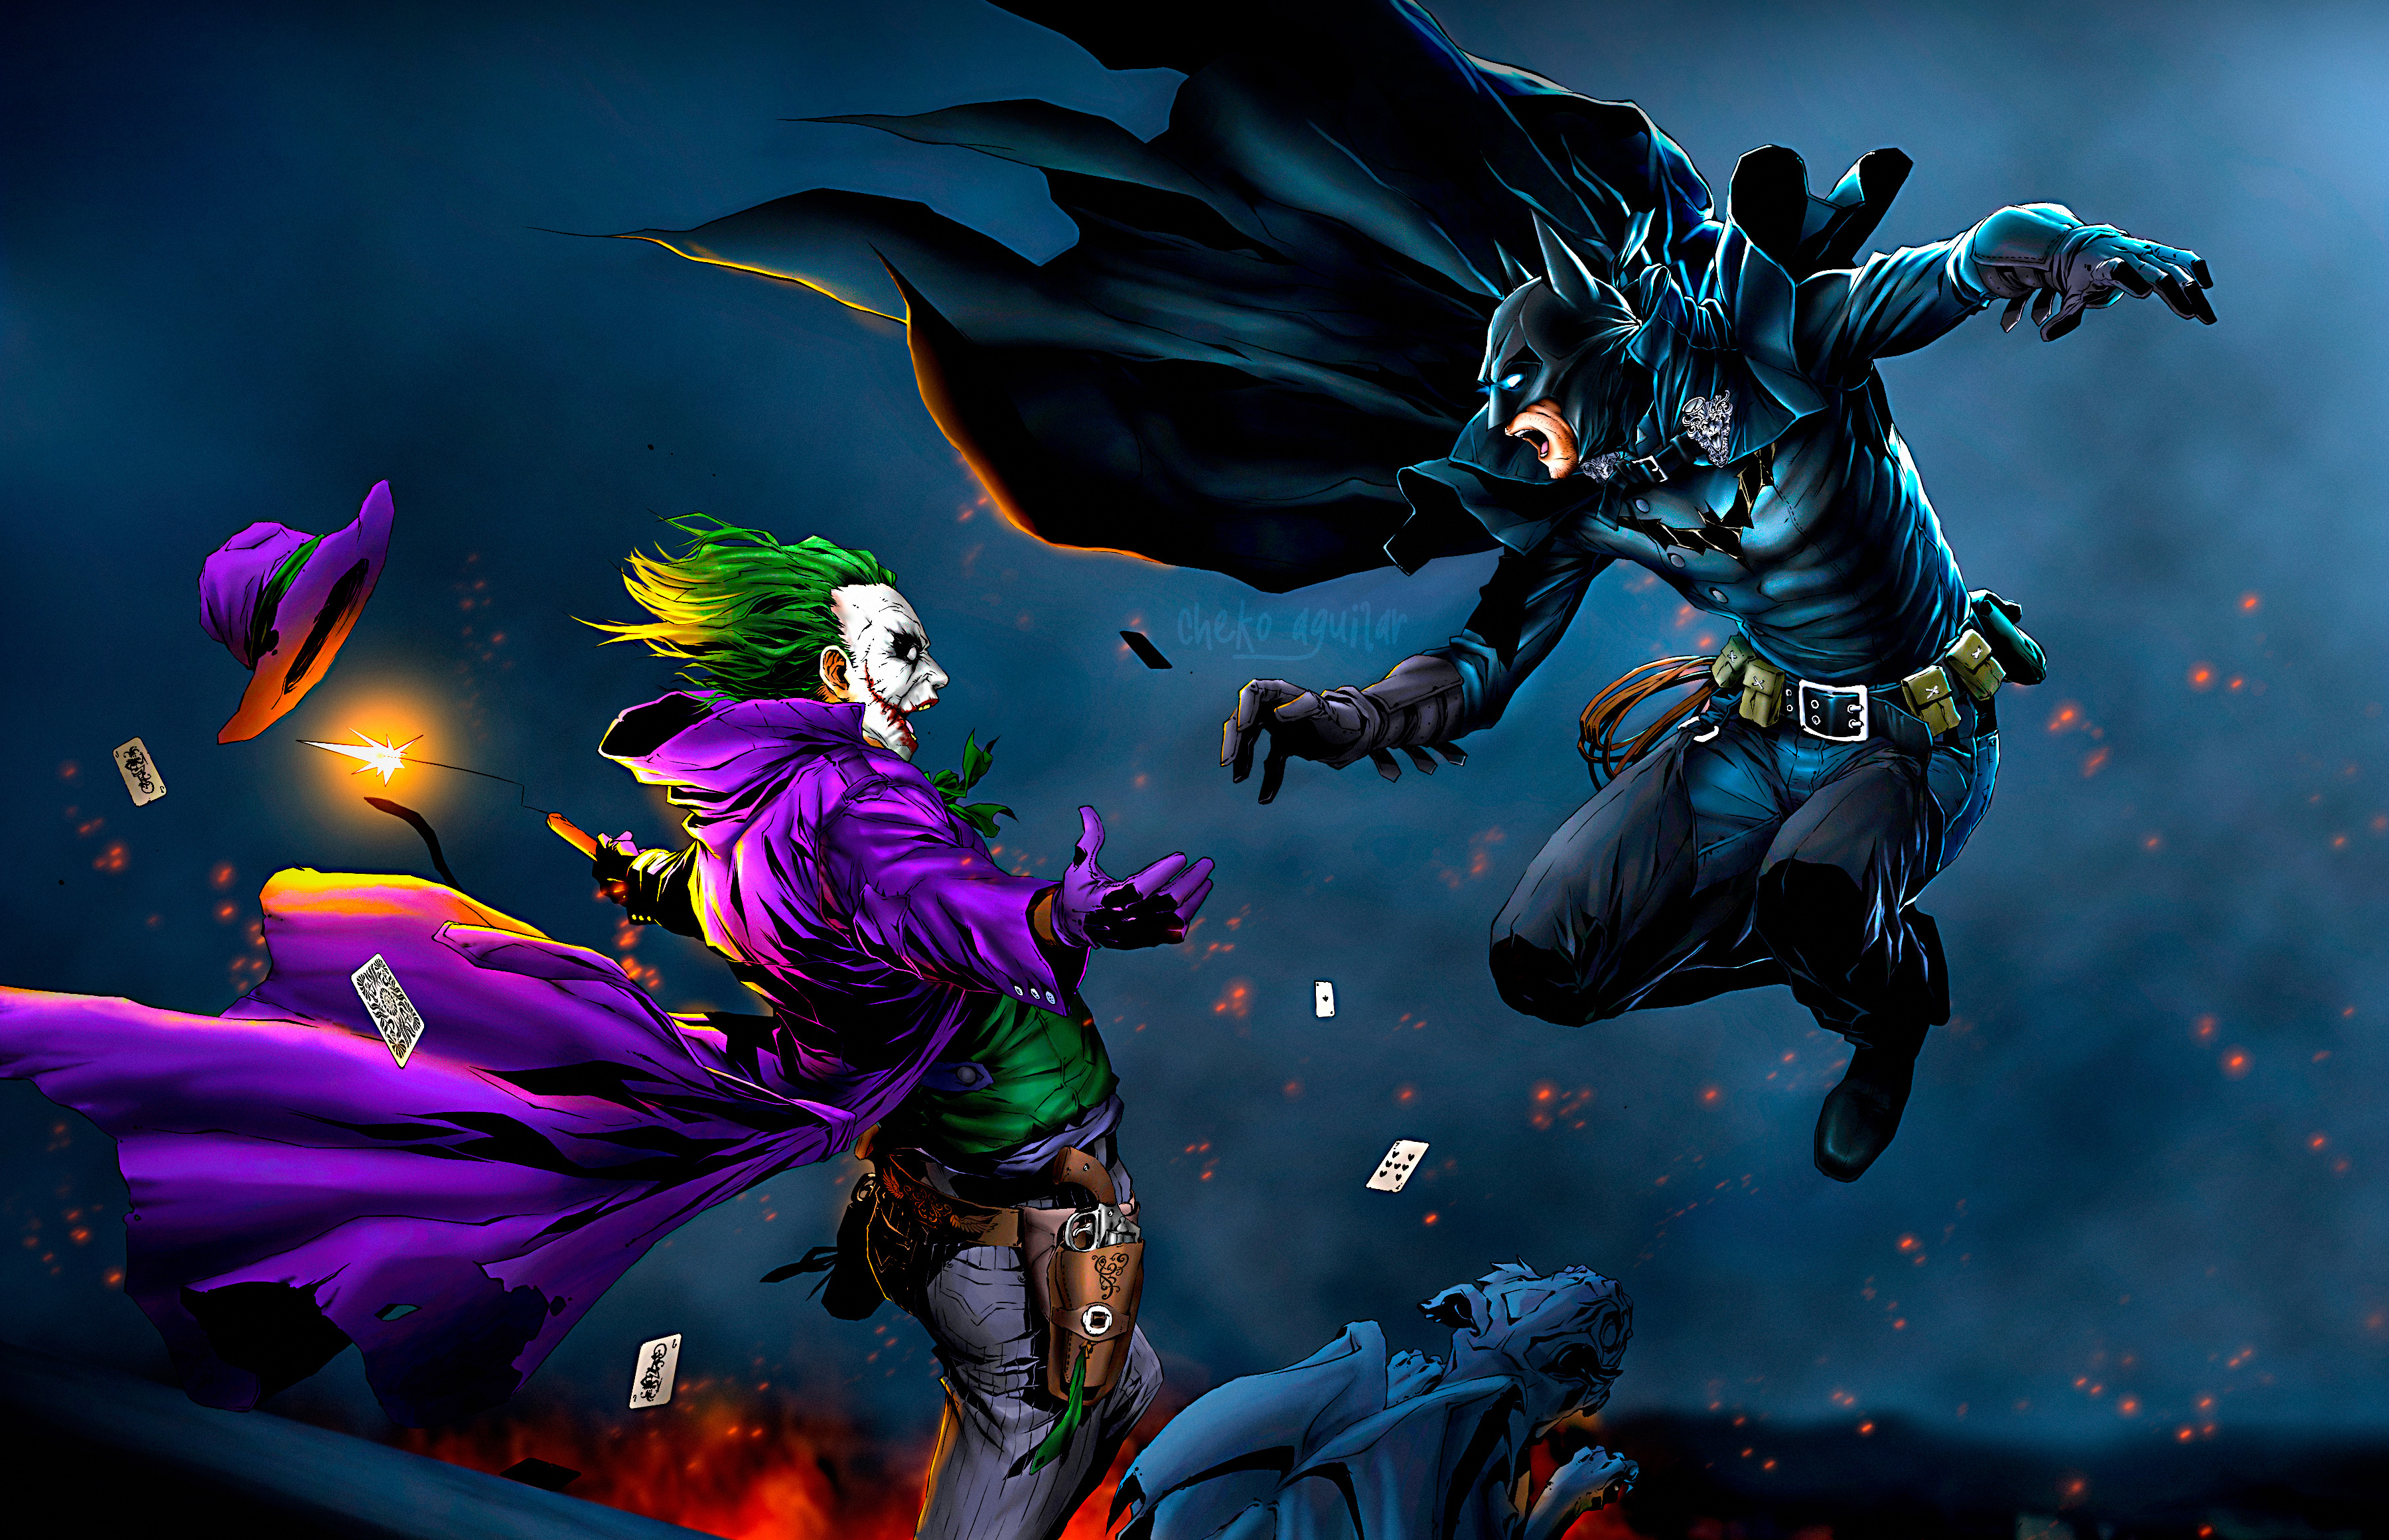 Batman vs. Joker by ChekoAguilar